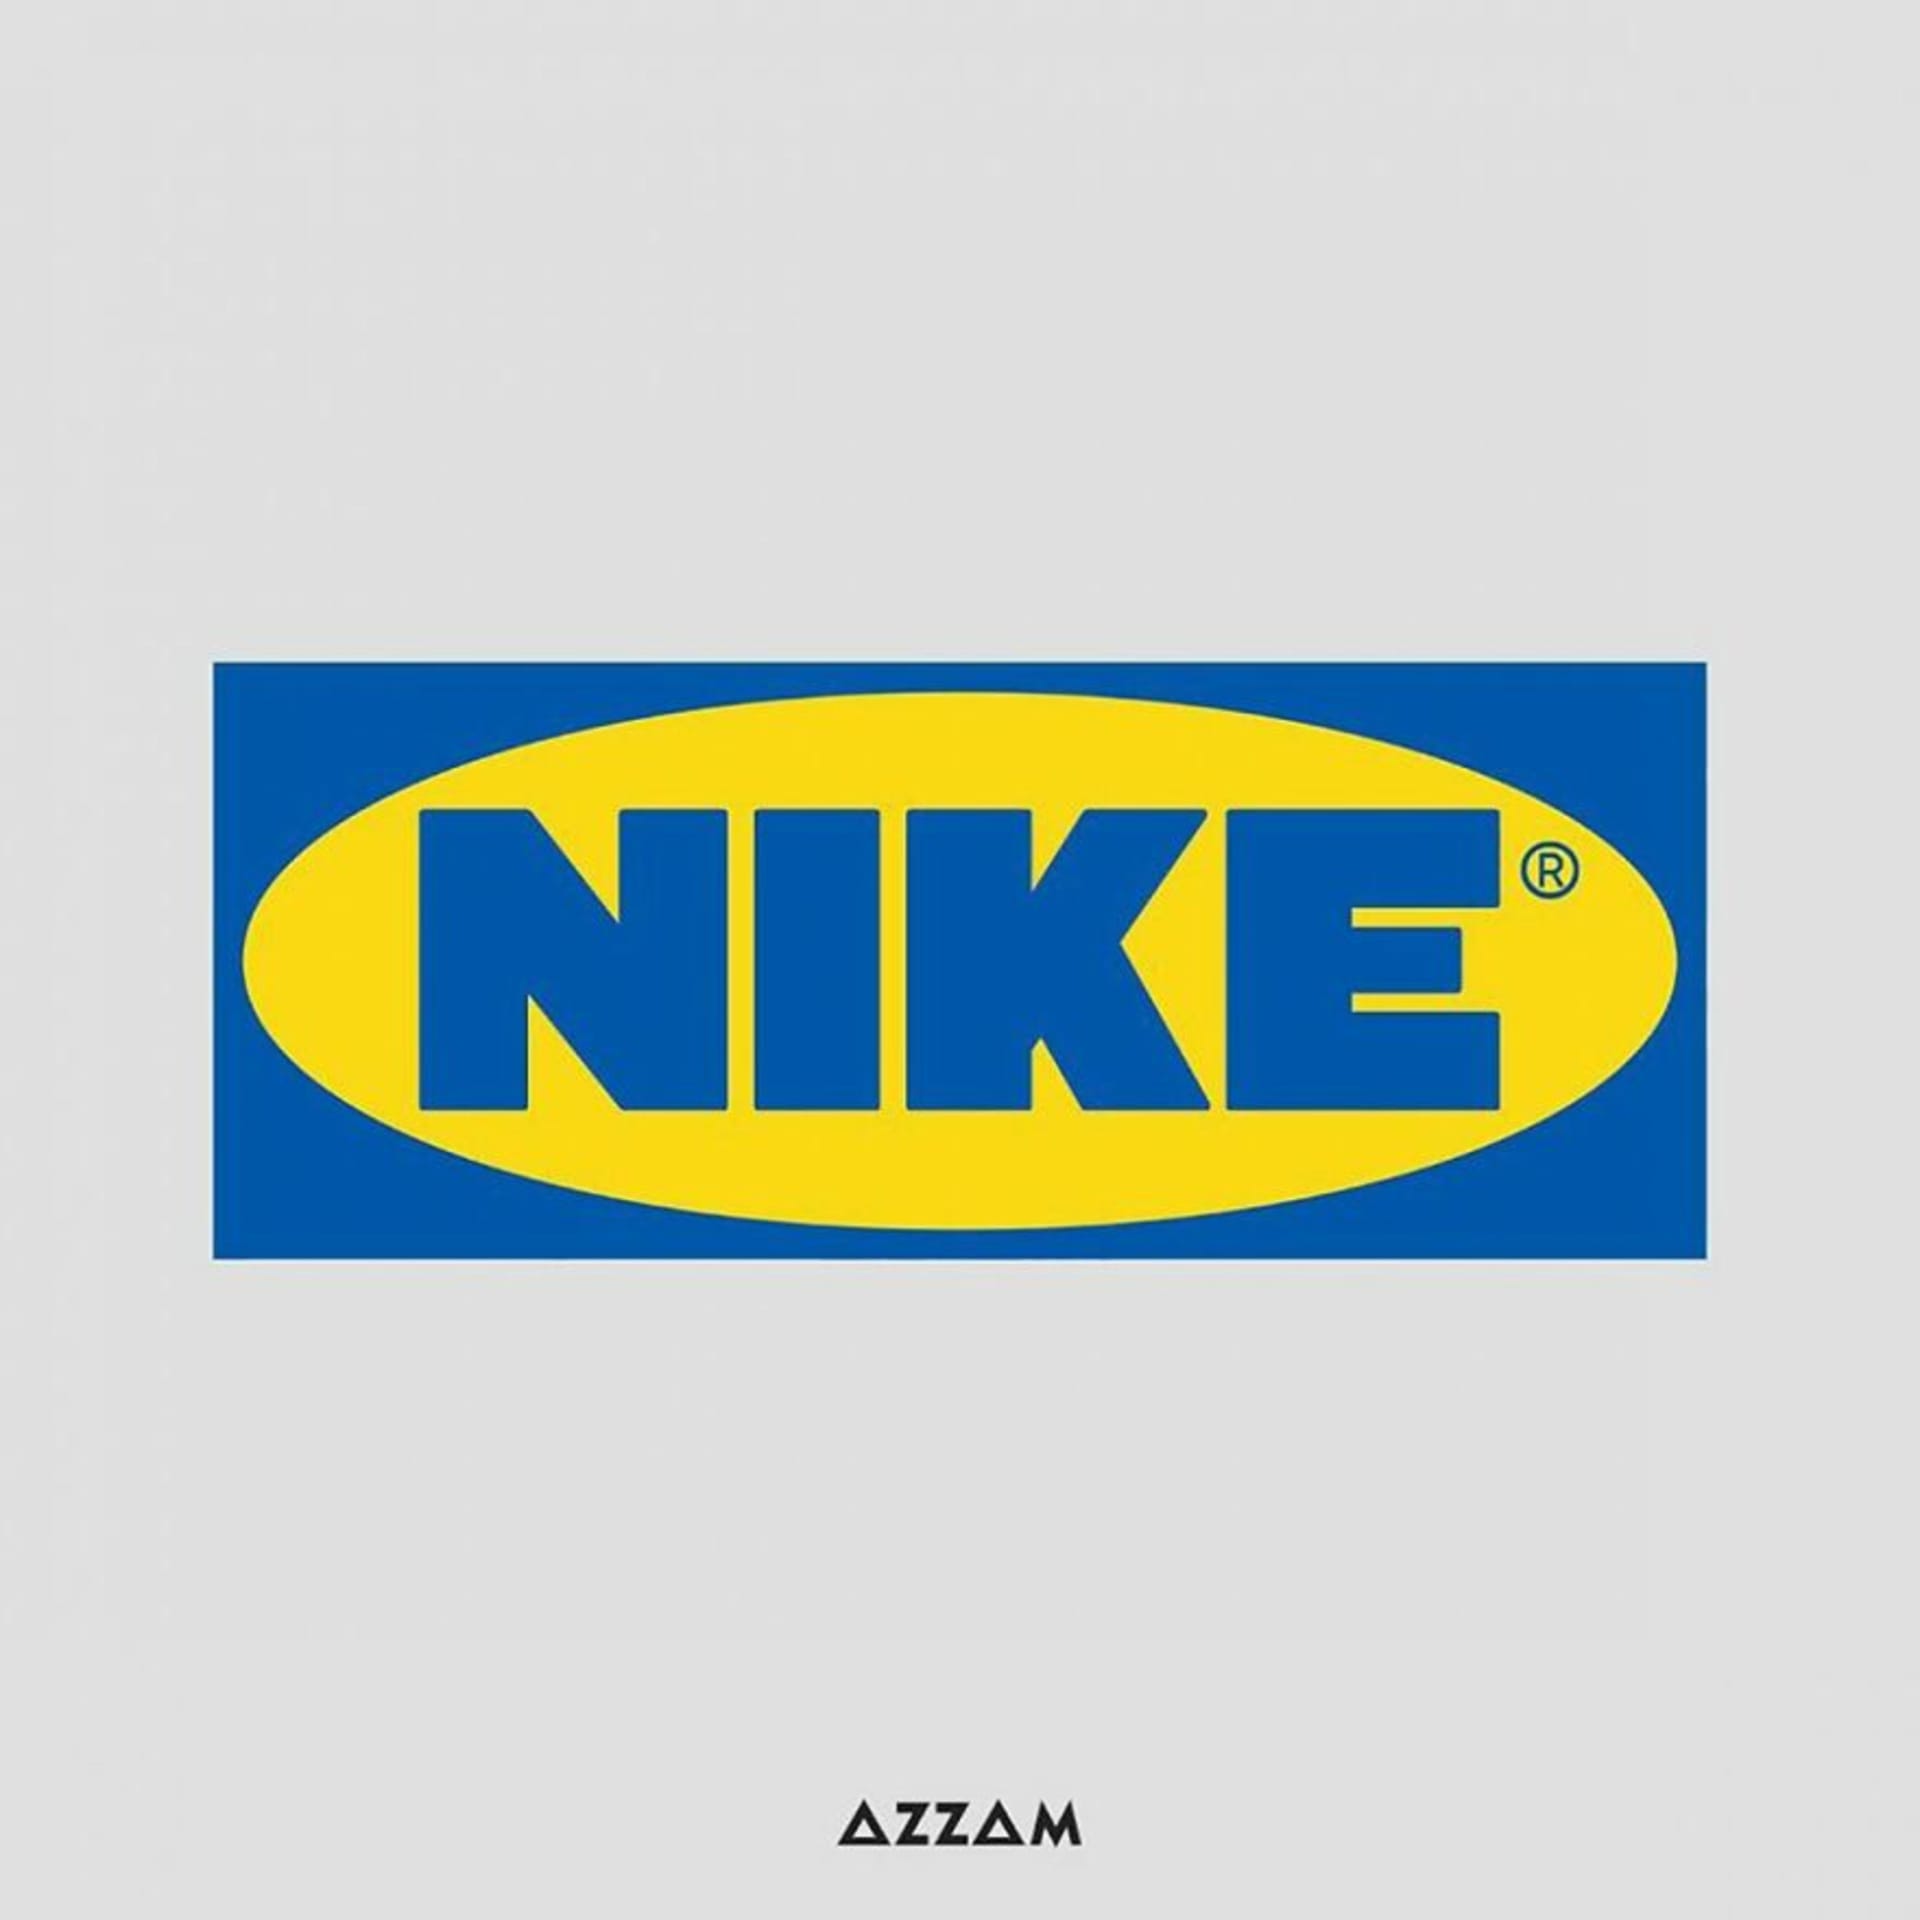 IKEA X Nike